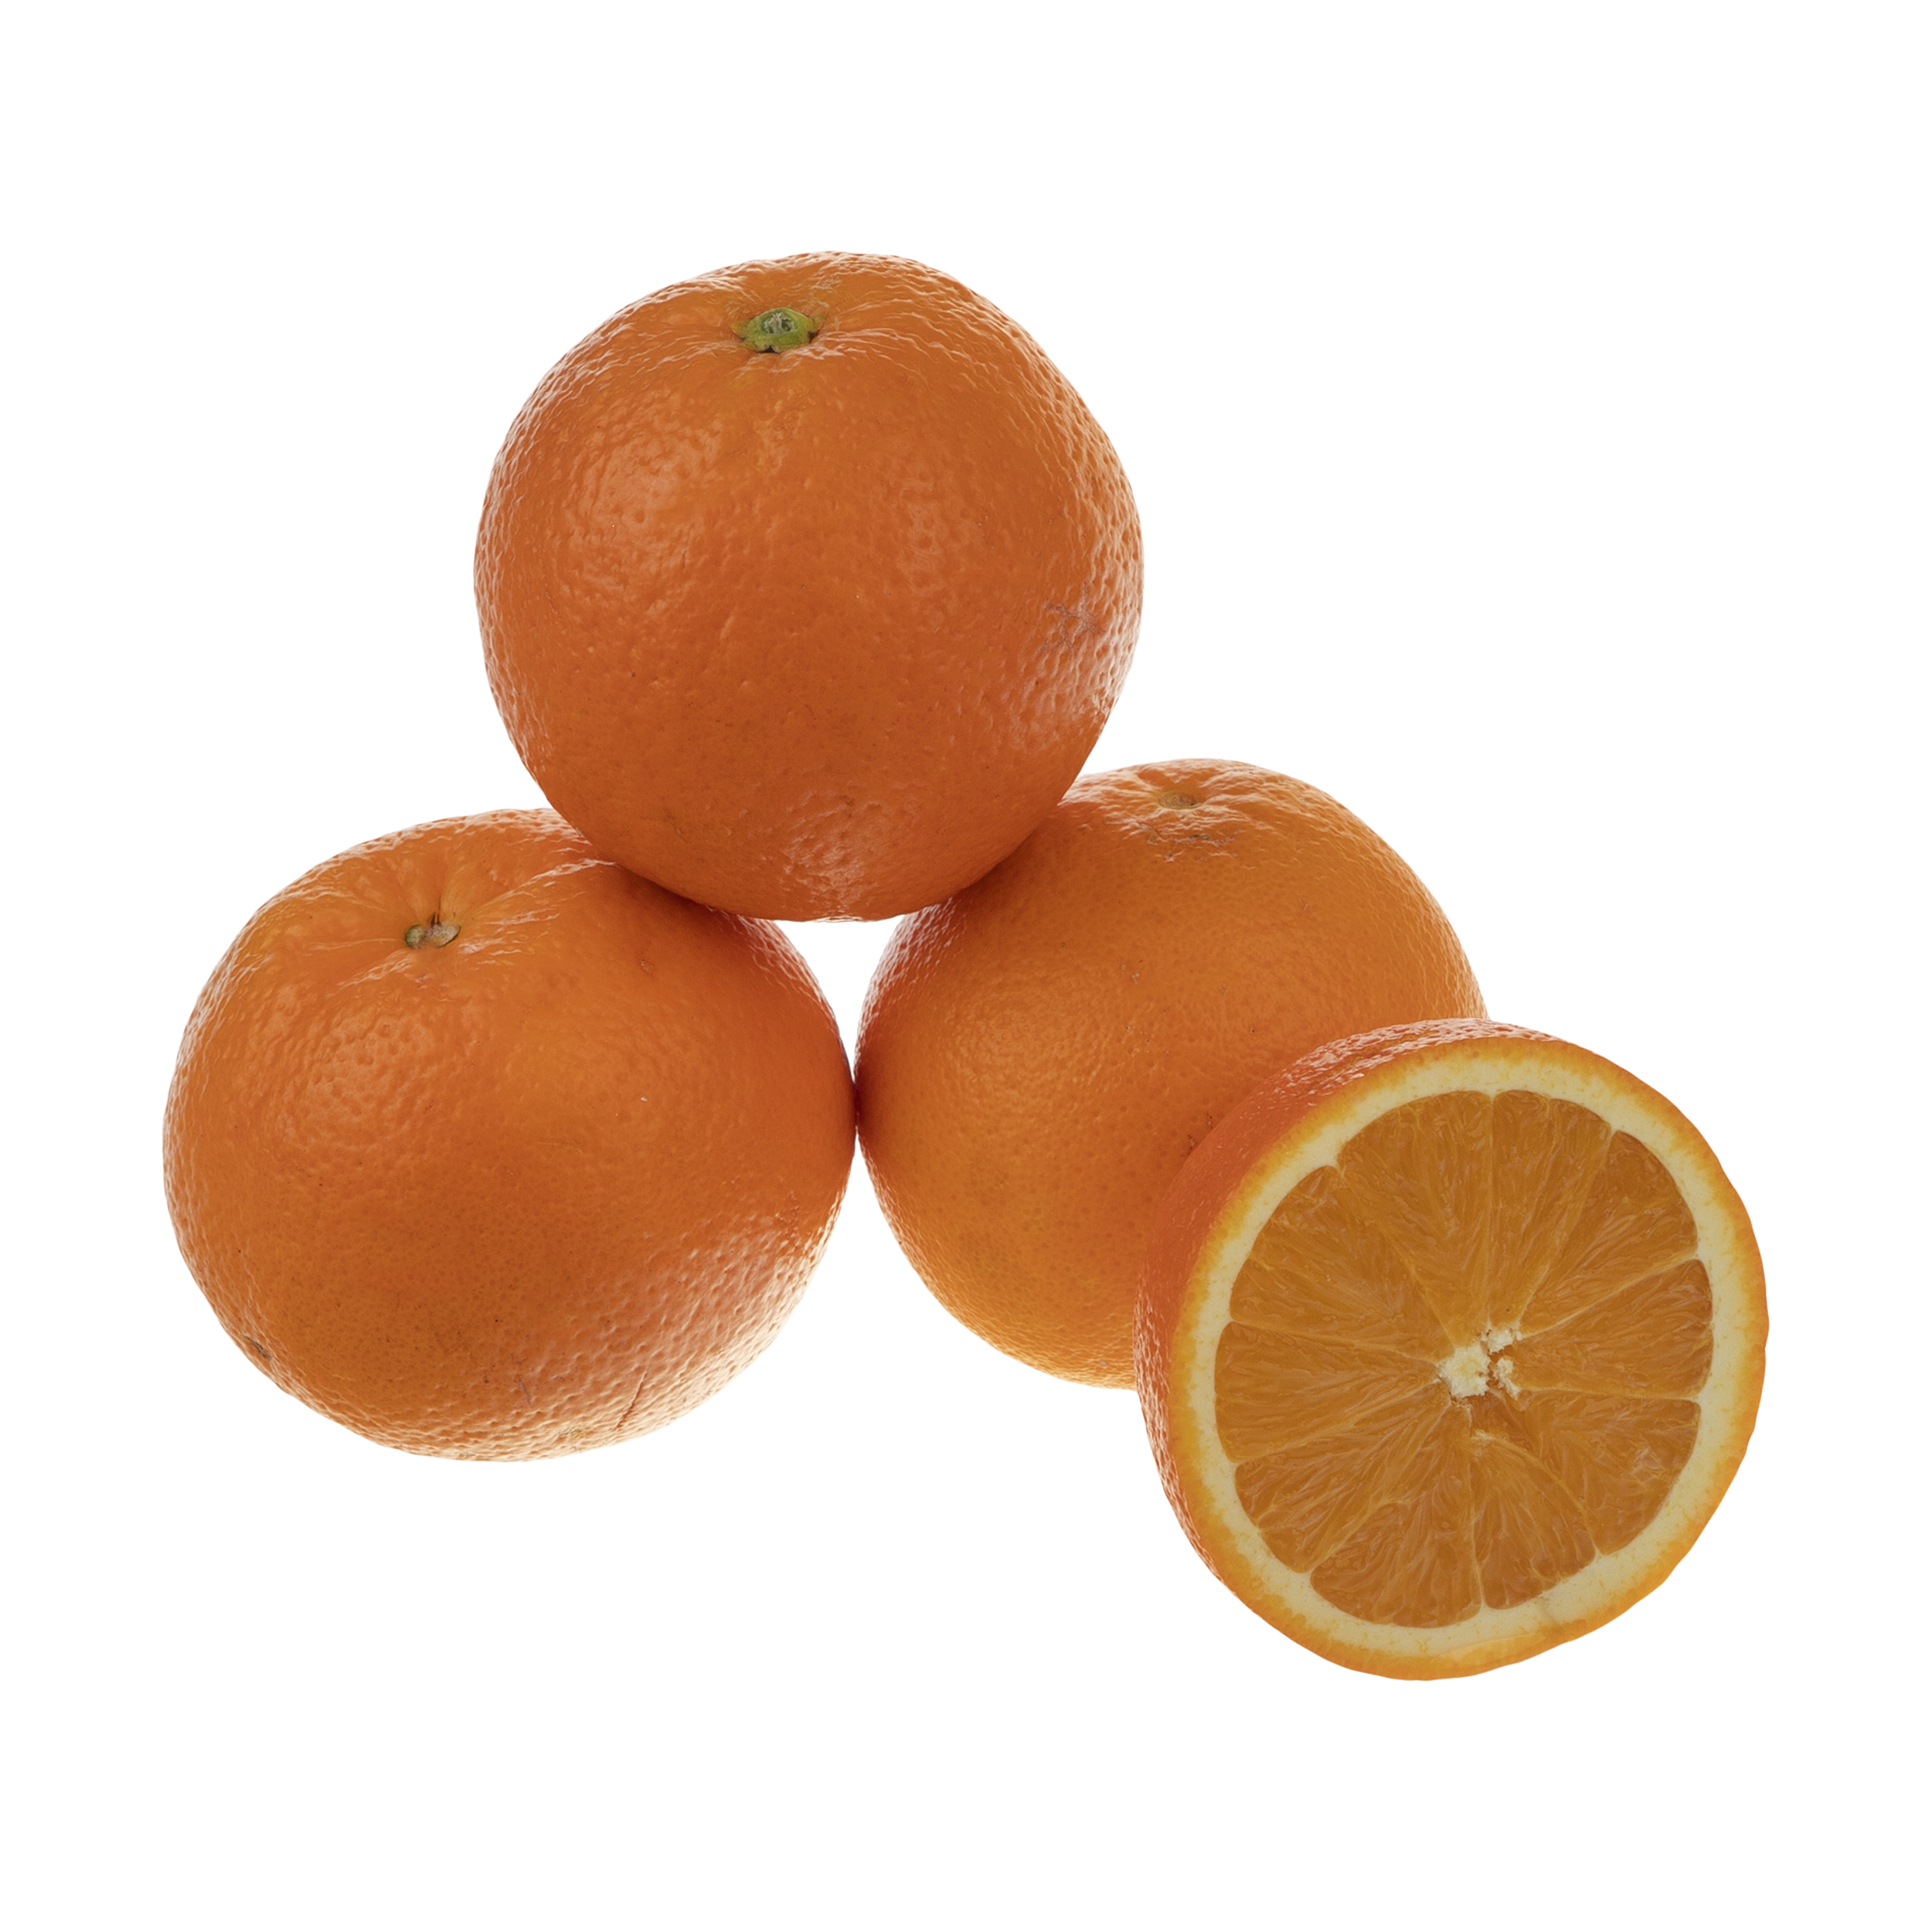 قیمت پرتقال تامسون شمال درجه 1 سبزیکو - 1 کیلوگرم